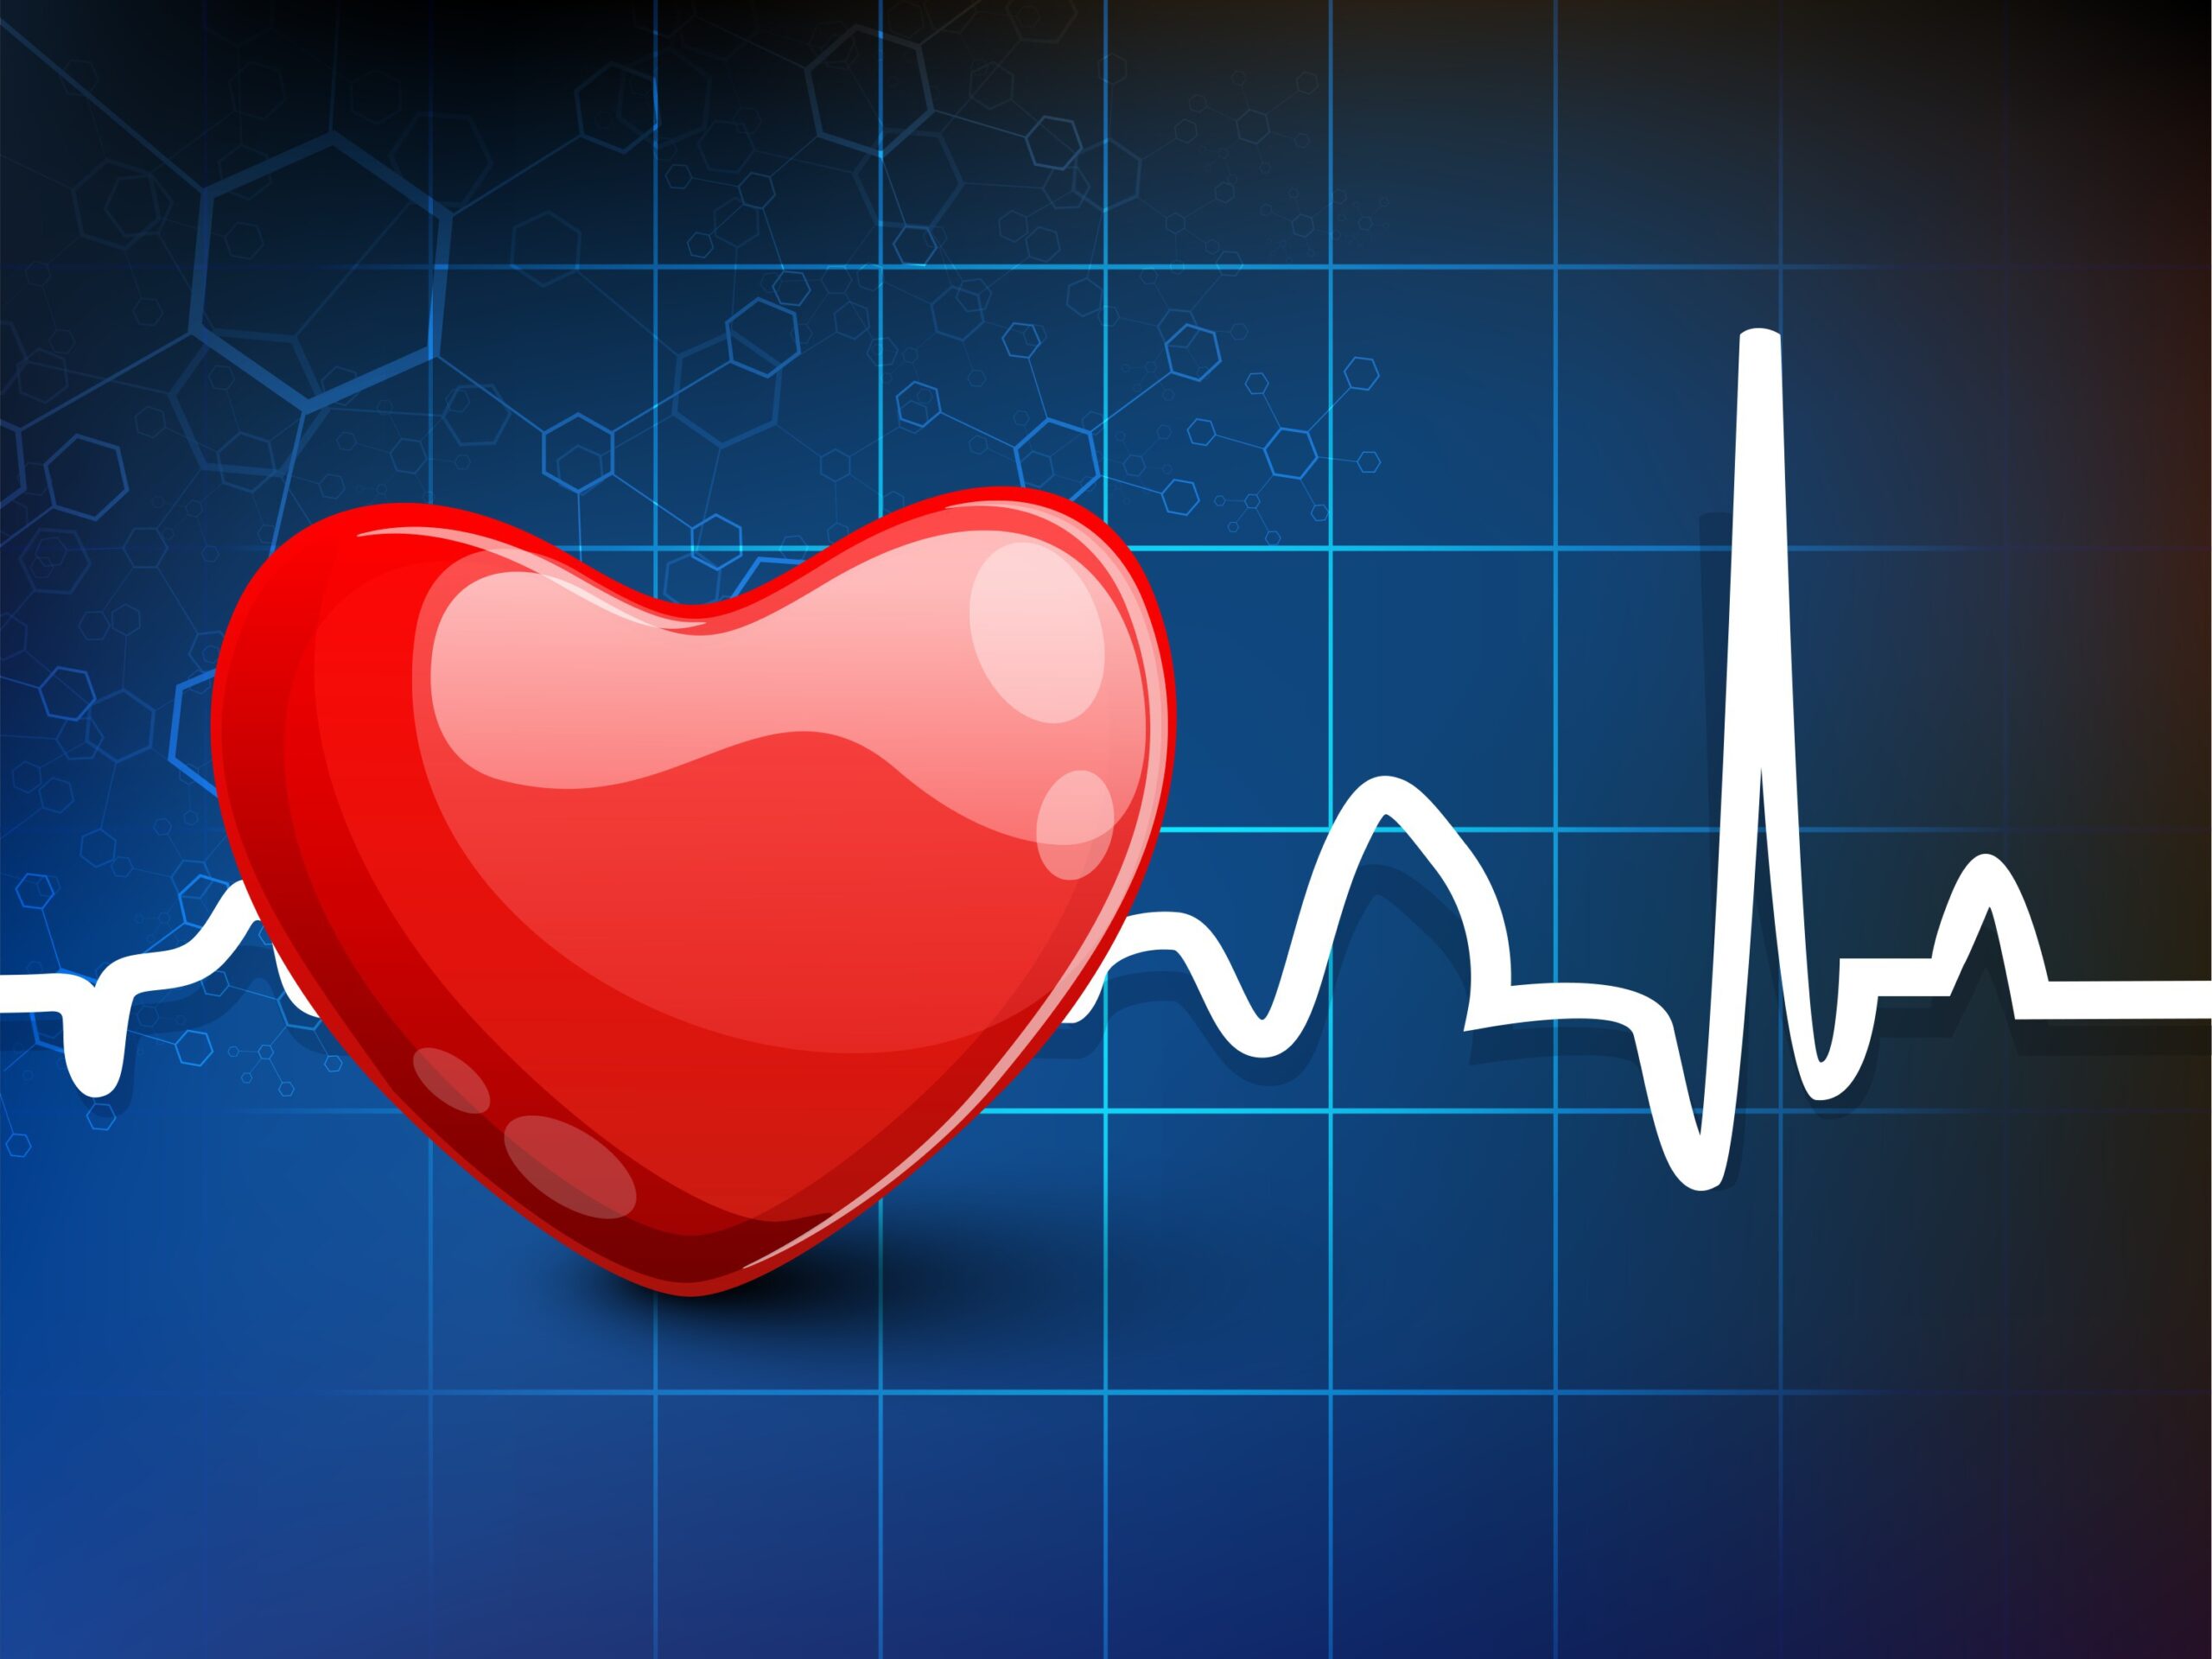 Η έλλειψη σιδήρου μπορεί να αυξήσει τον κίνδυνο καρδιακής νόσου